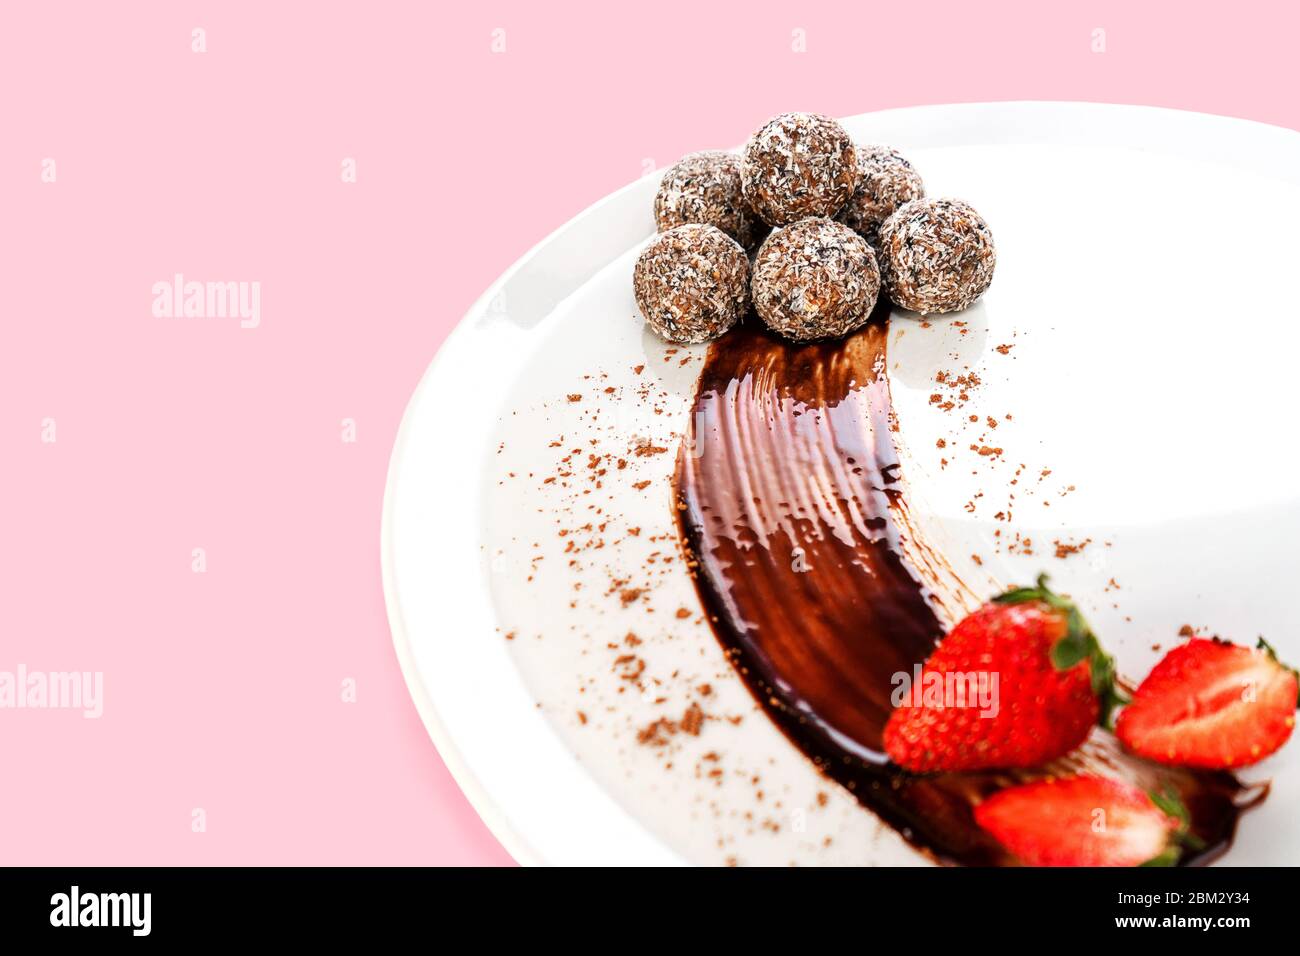 Trendige Energiebälle oder Energiebisse mit Hafer, Schokolade und Kokosnuss auf weißem Teller mit Erdbeere. Gesunde vegane und rohe Ernährung. Selektiver Fokus. Kopierbereich. Stockfoto